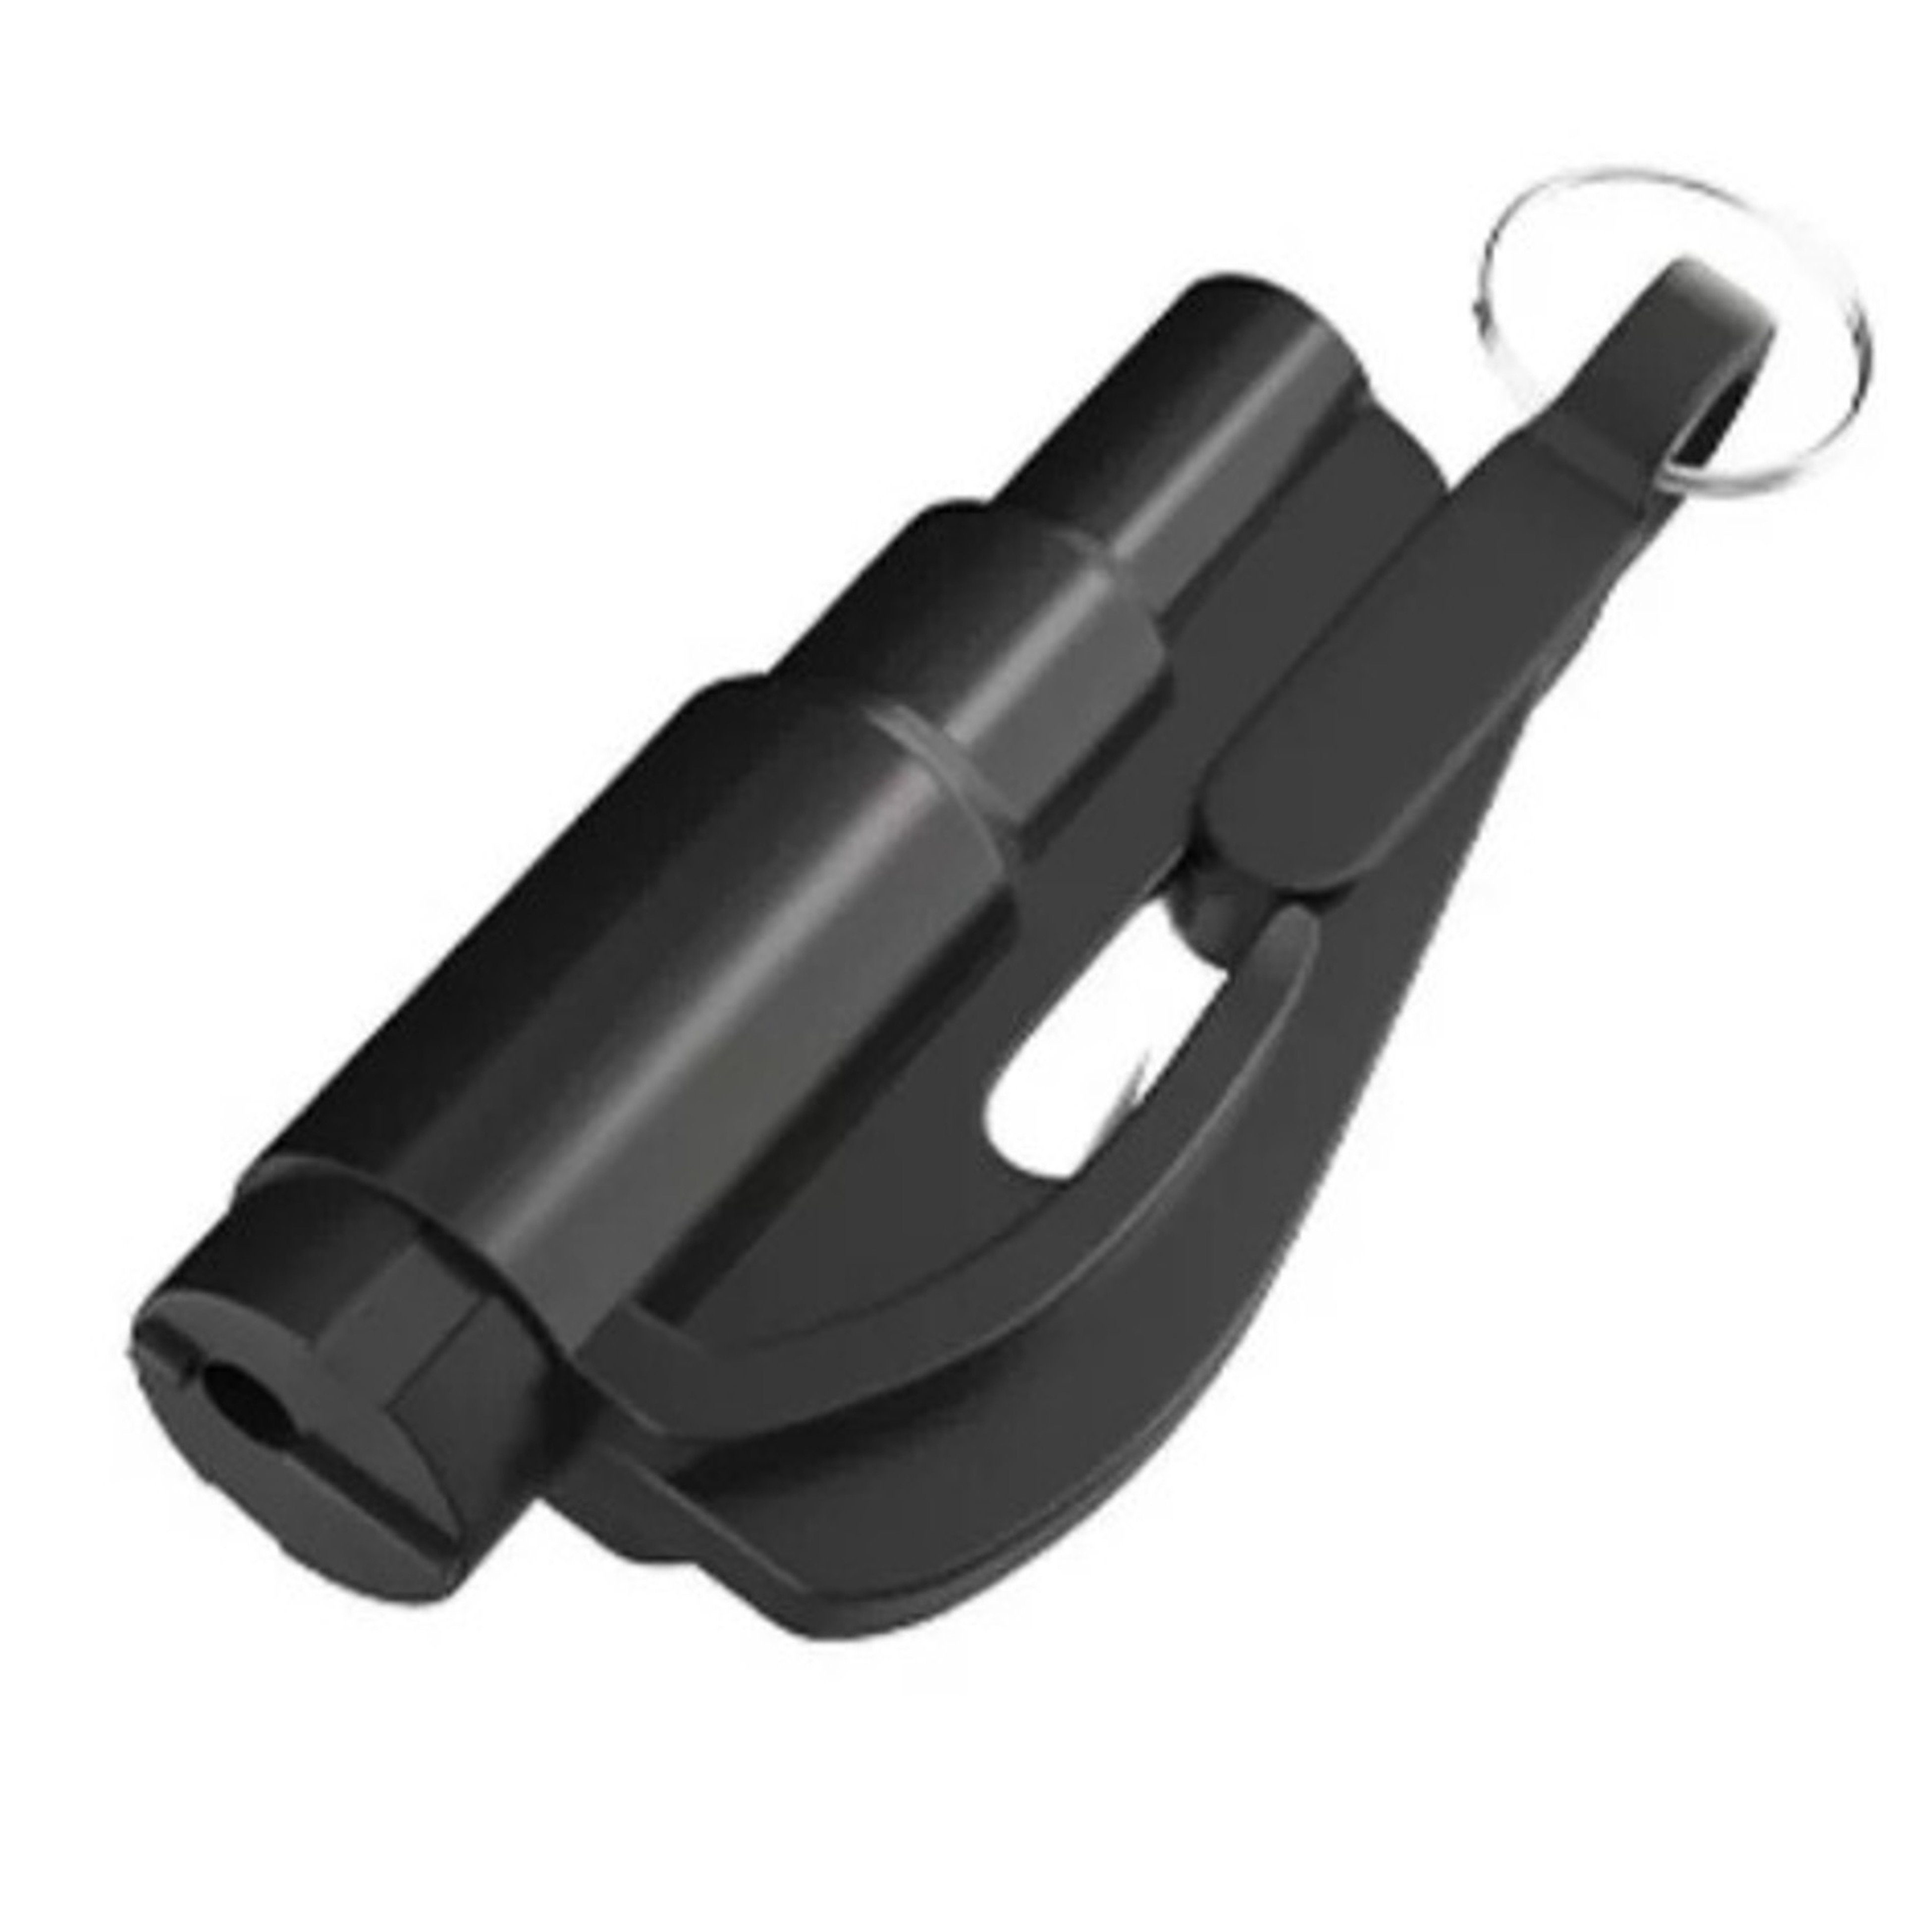 2in1-Notfall-Hammer mit integriertem Gurtschneider für Kfz - Ihr